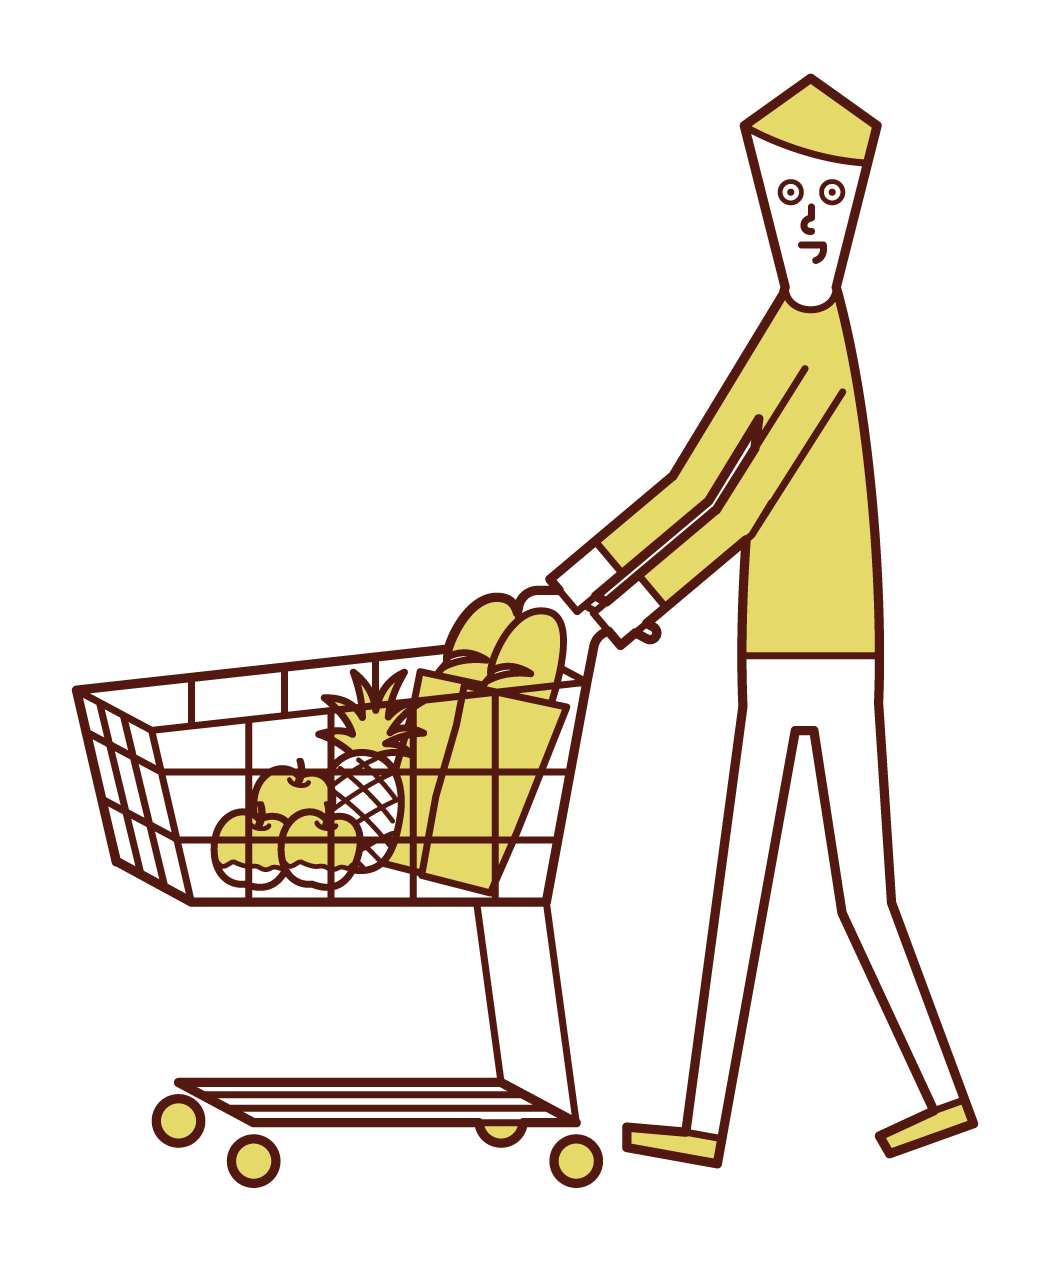 スーパーマーケットで買い物をする人 男性 のイラスト フリーイラスト素材 Kukukeke ククケケ